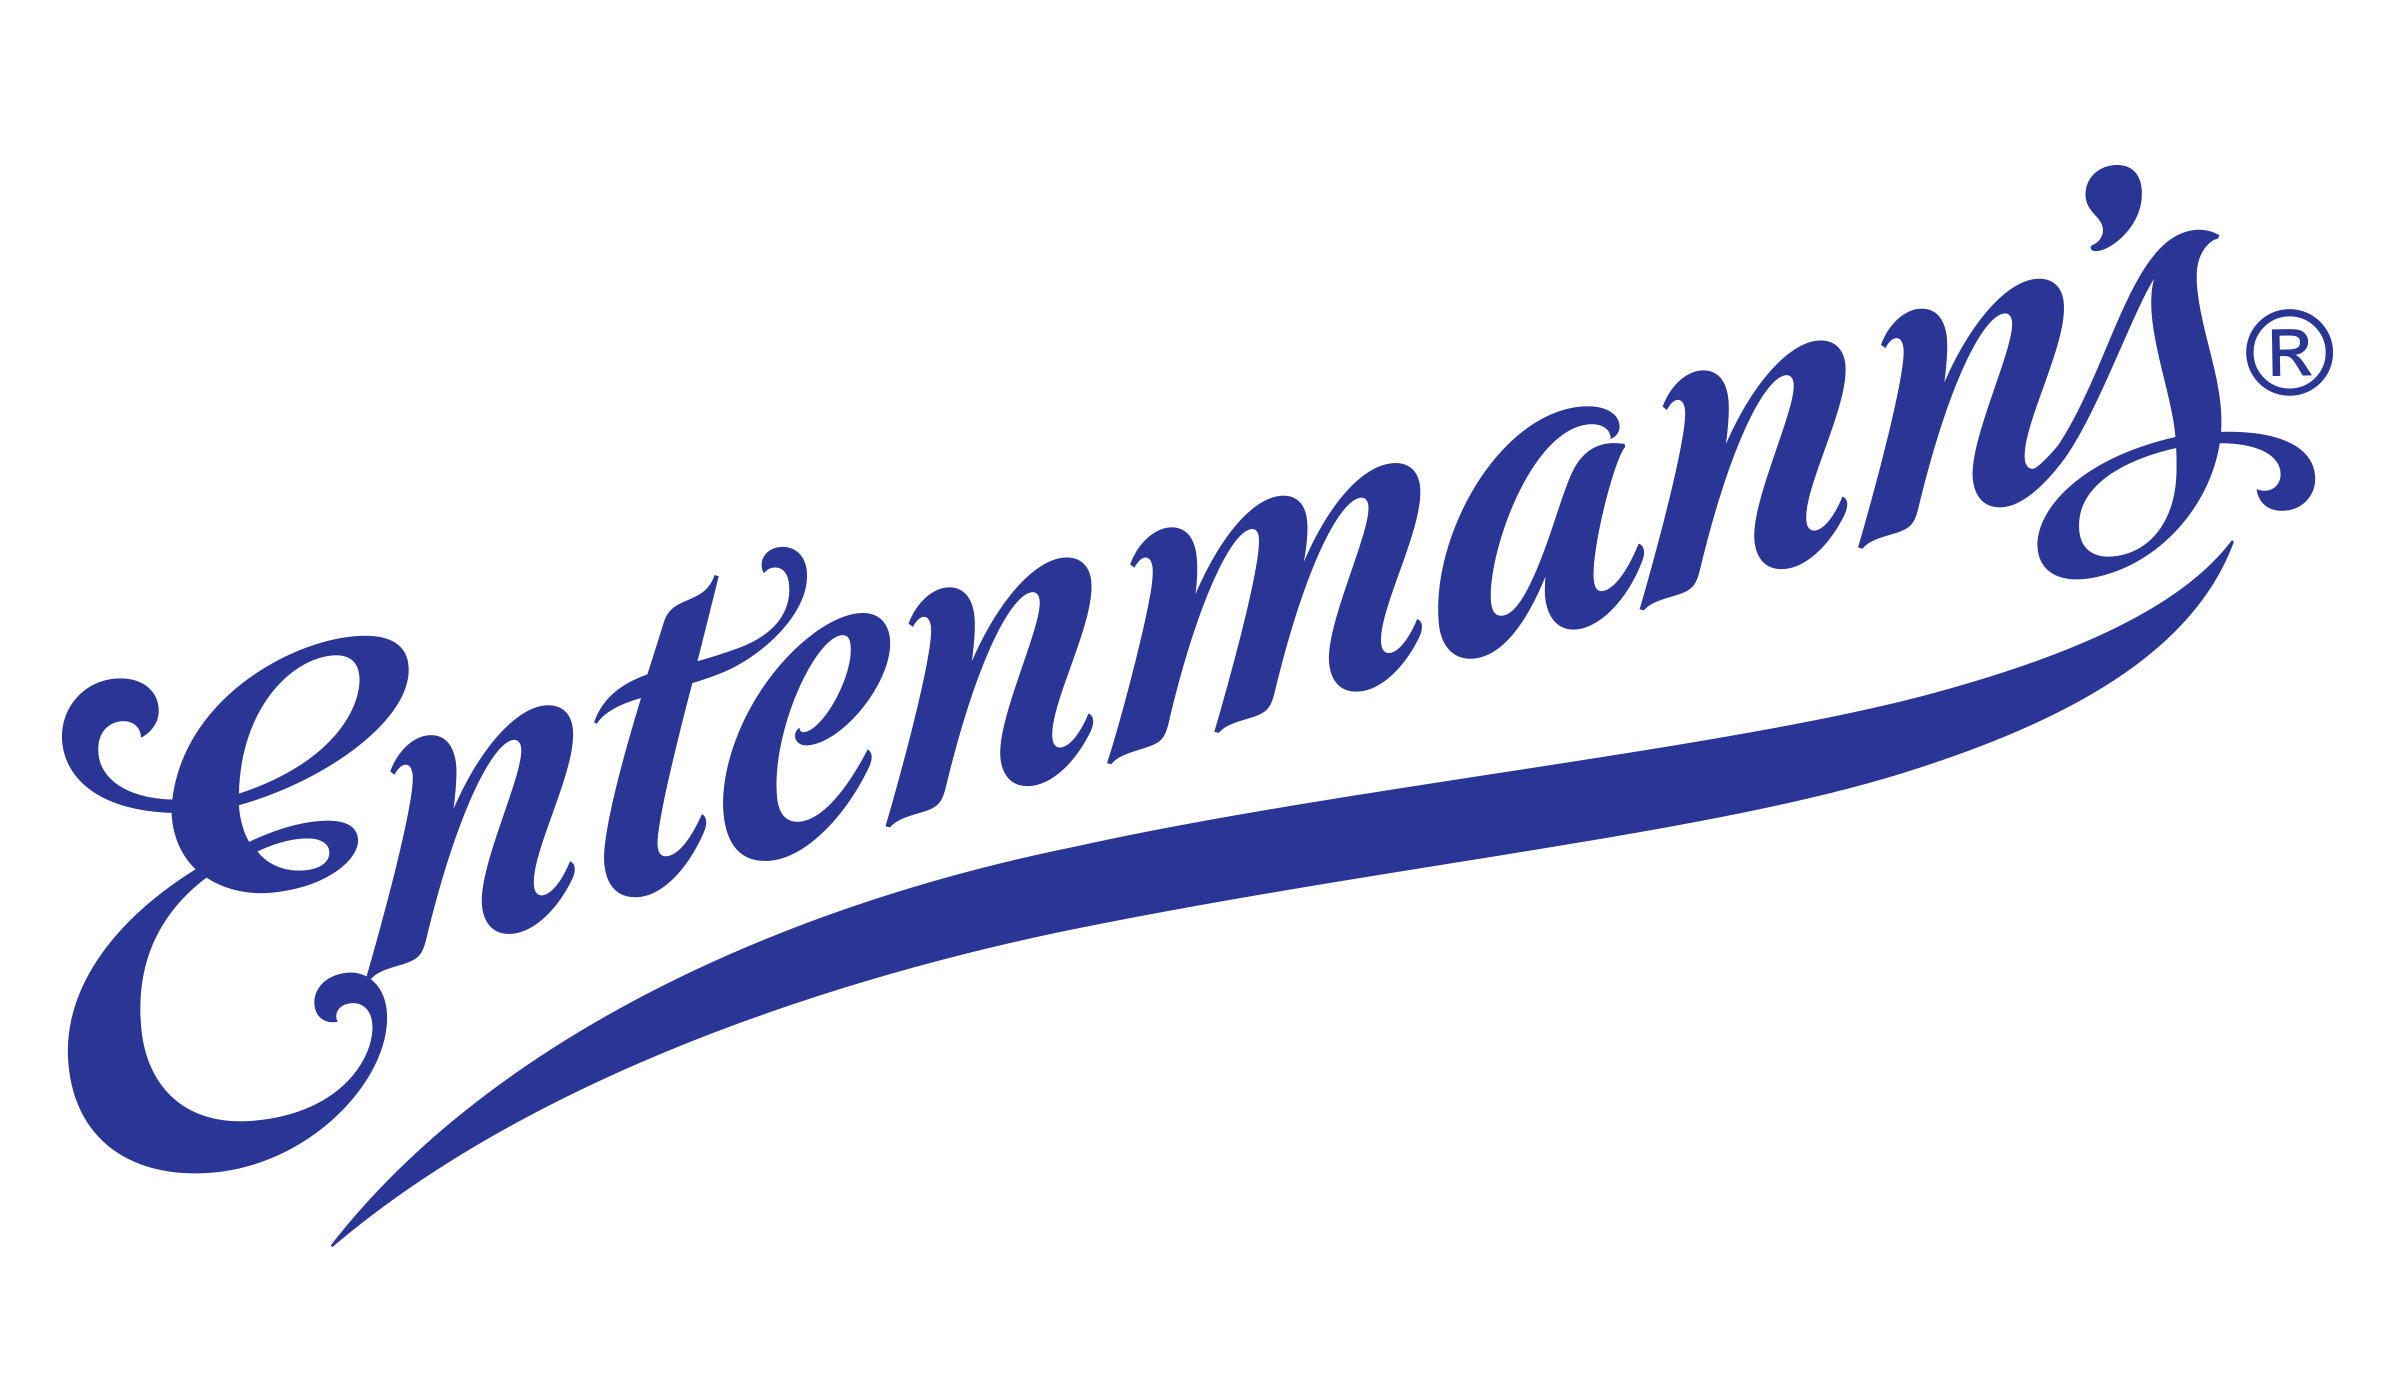 Entenmann's Logo